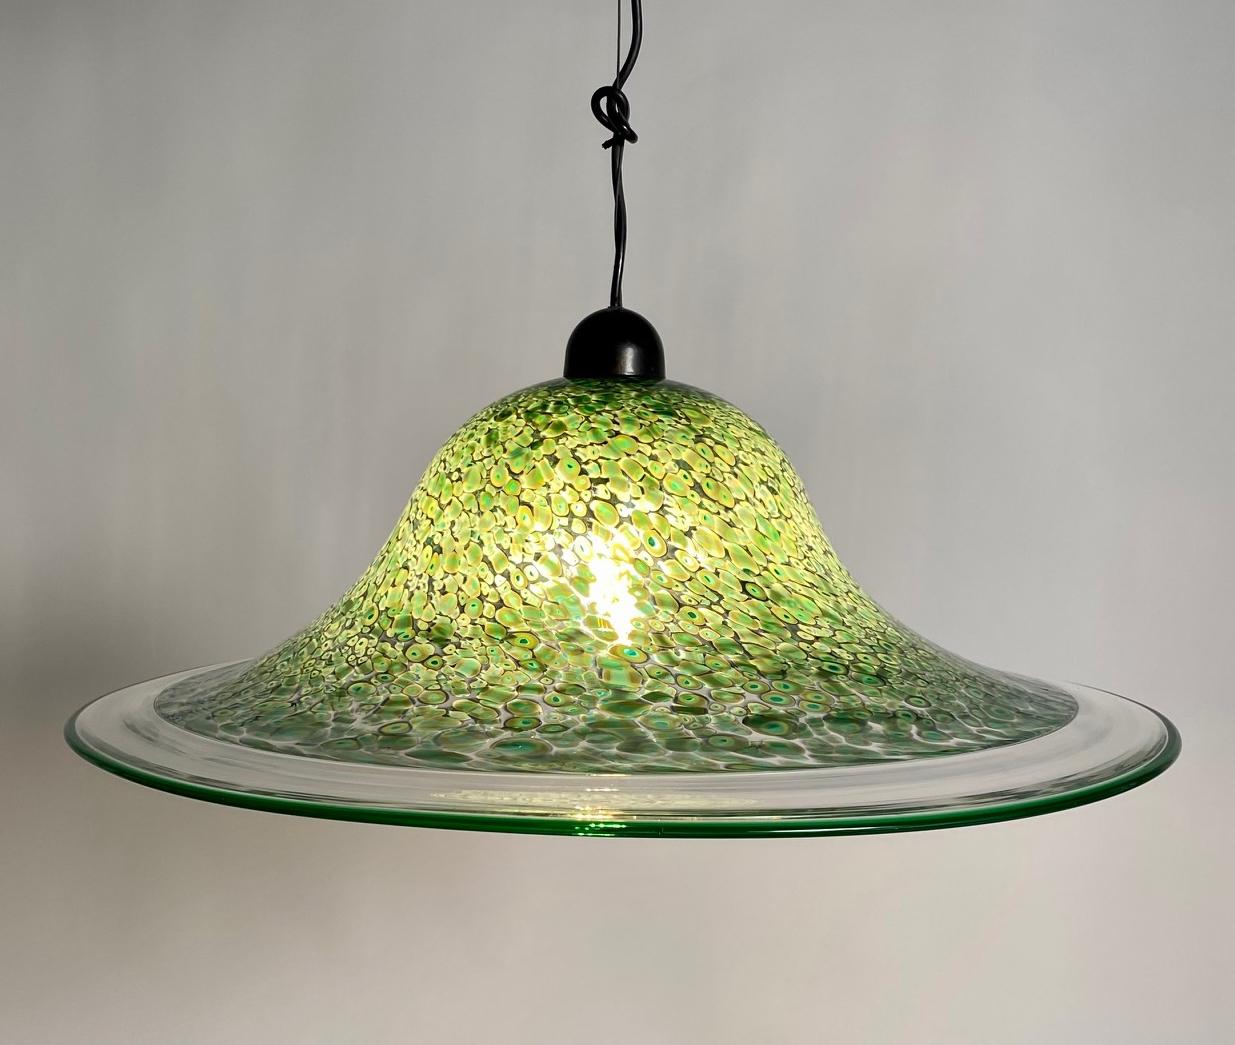 Illuminez votre espace avec l'élégance enchanteresse de la lampe suspendue verte originale de Murano, la 